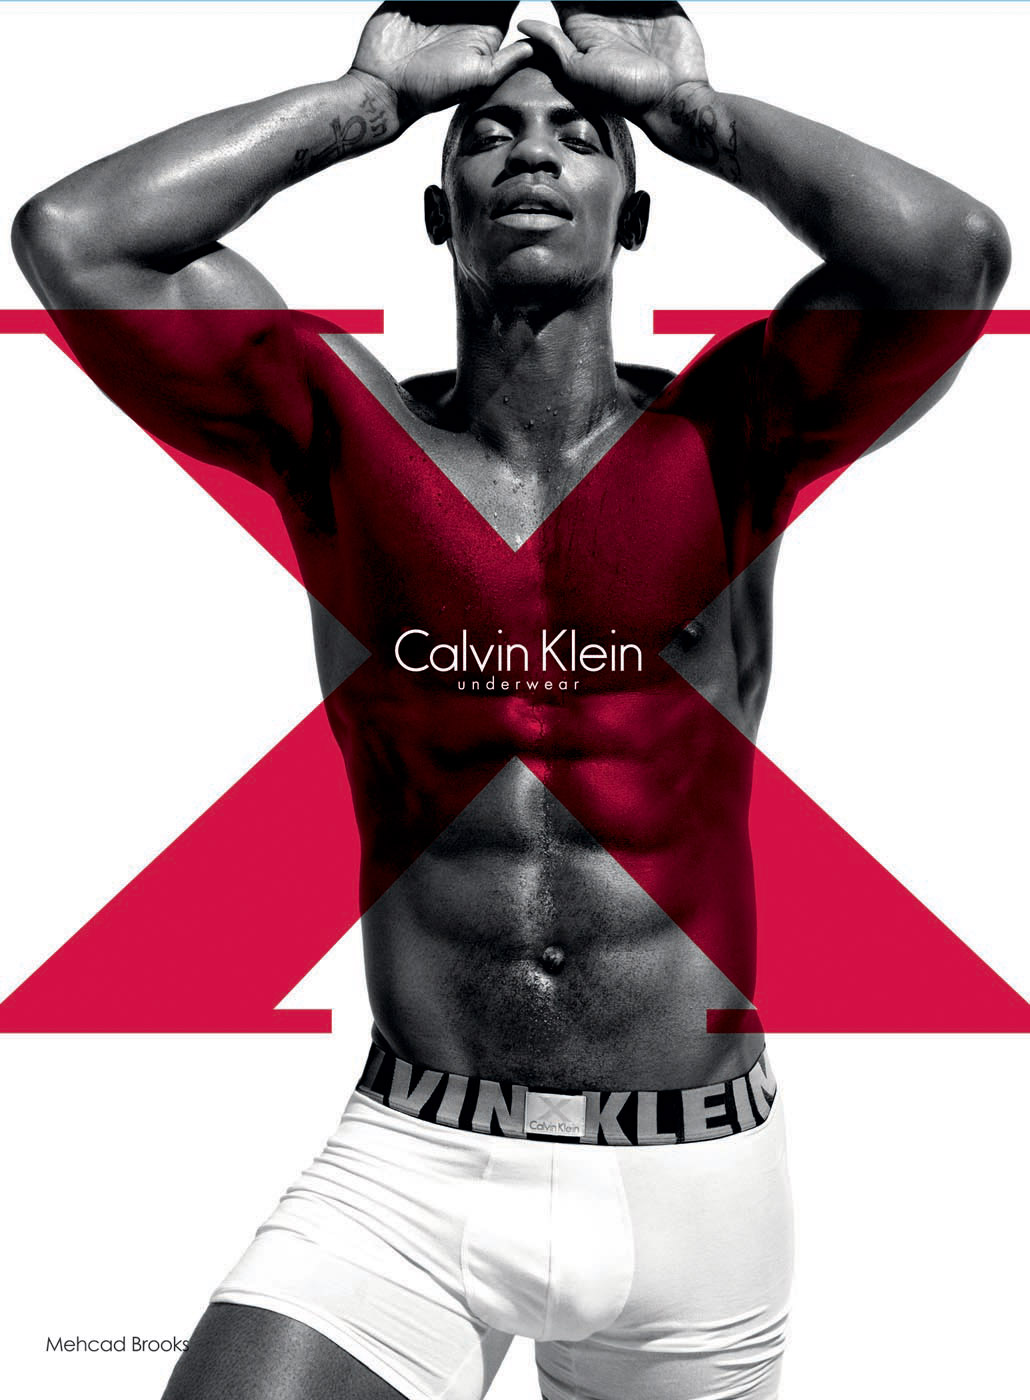 X Marks the Spot for Calvin Klein Underwear